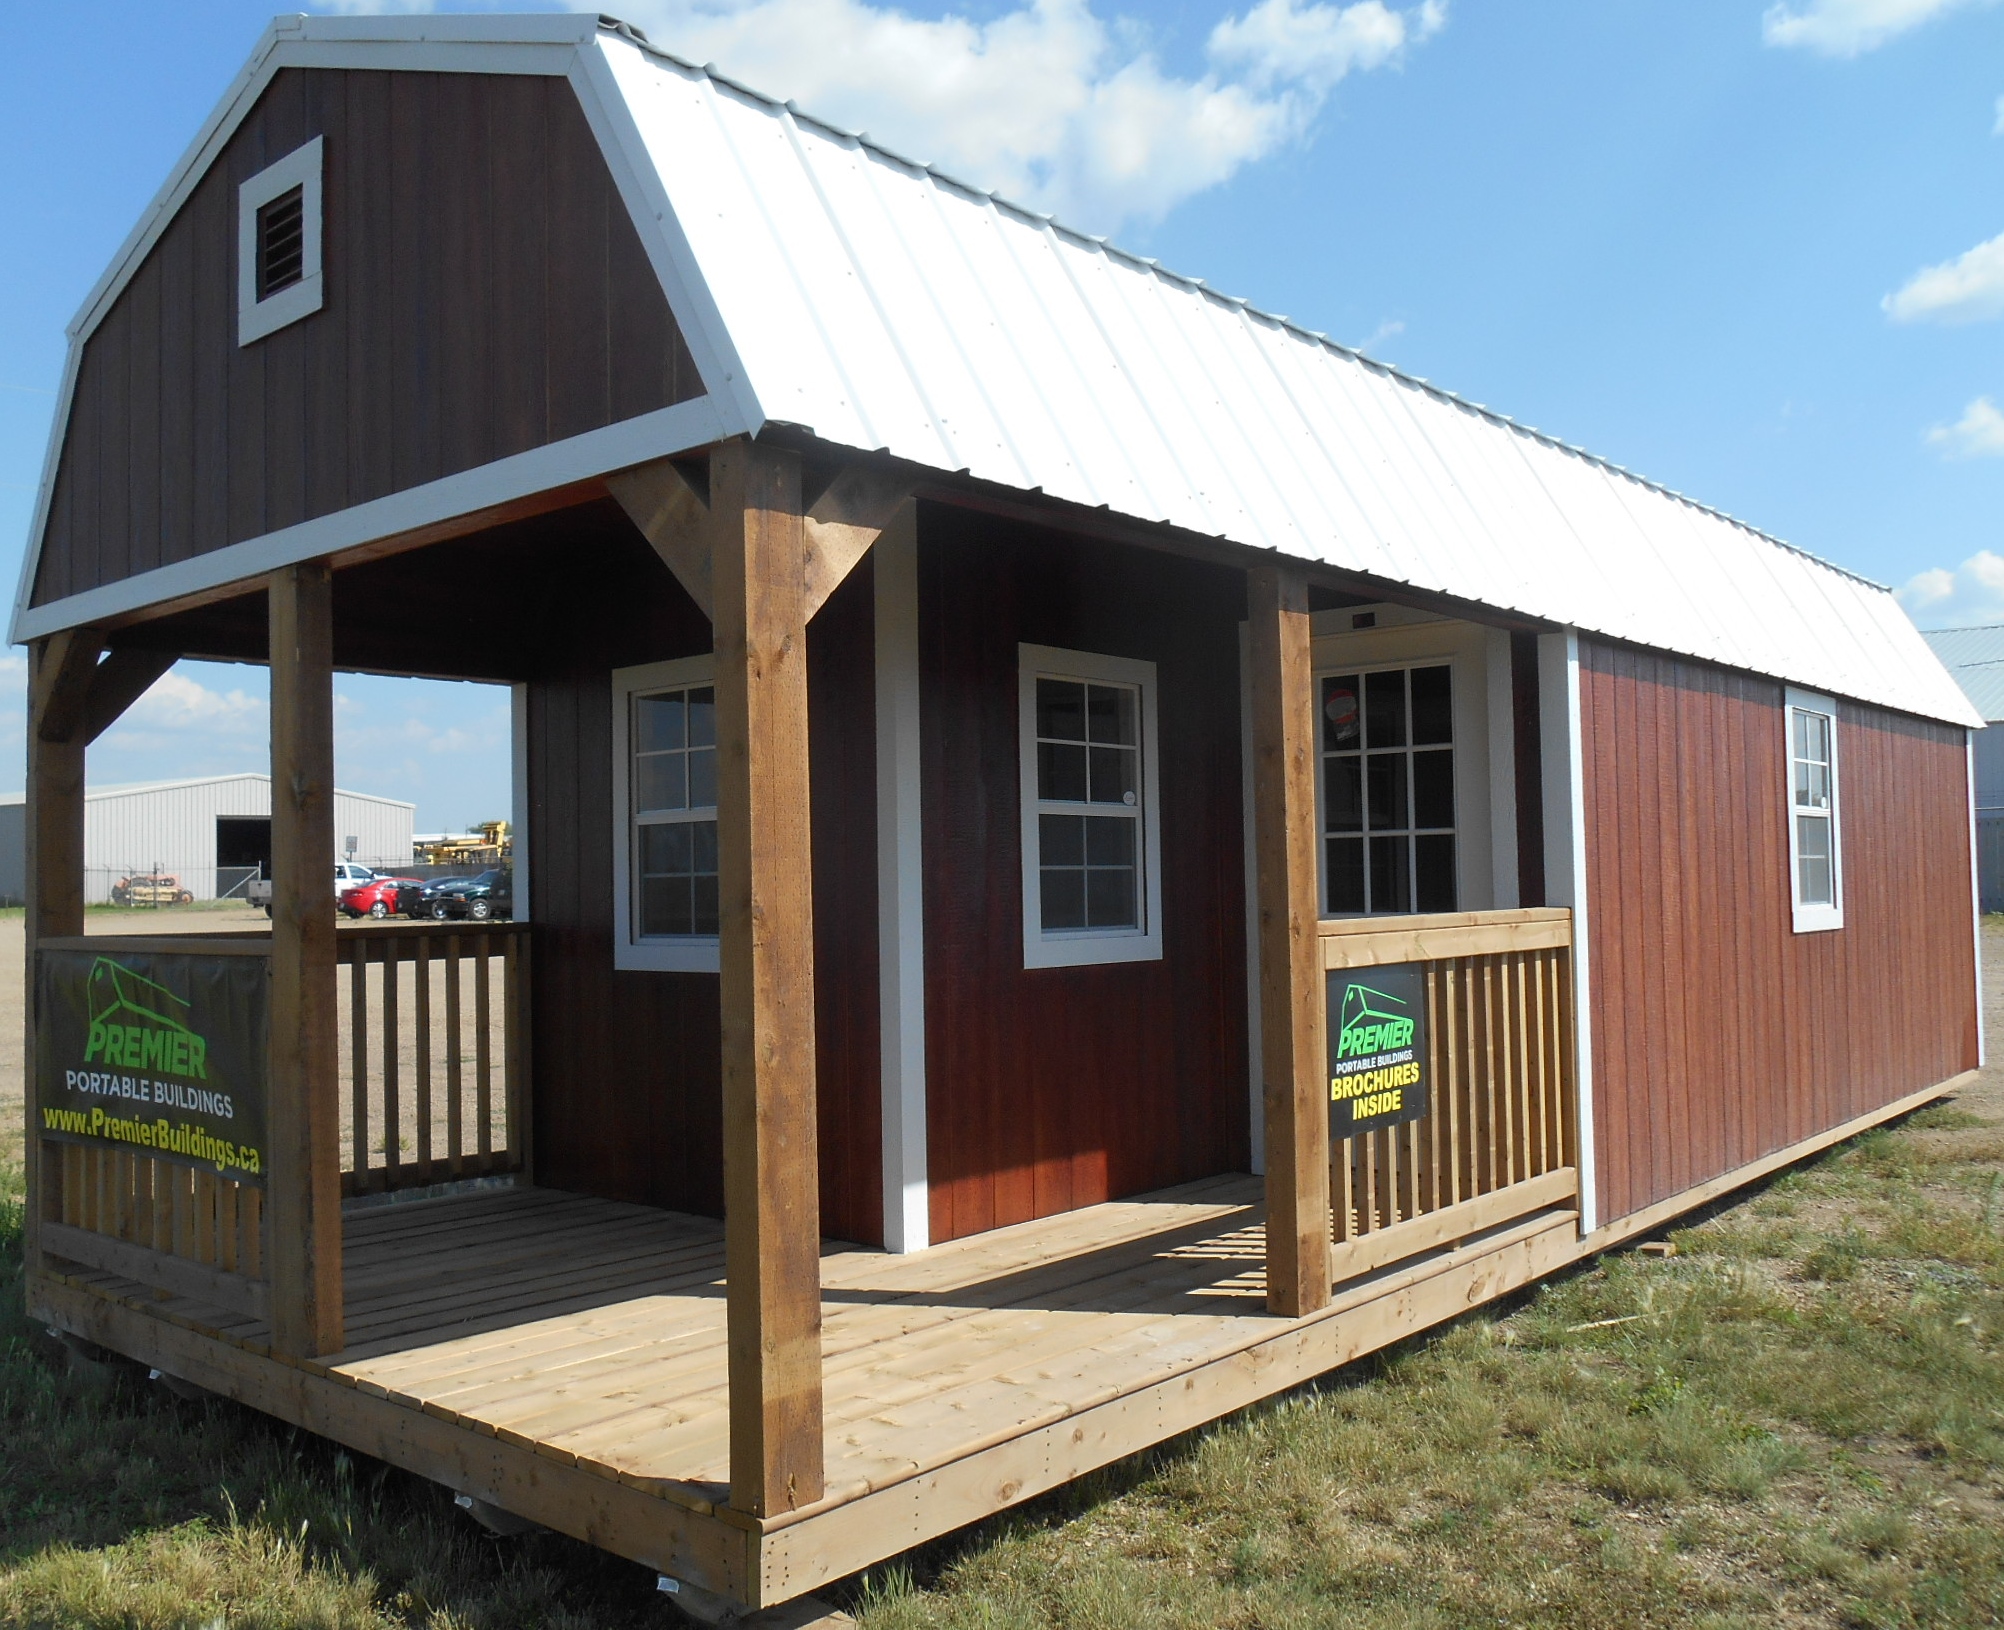 Premier Lofted Barn Cabin Buildings By Premier